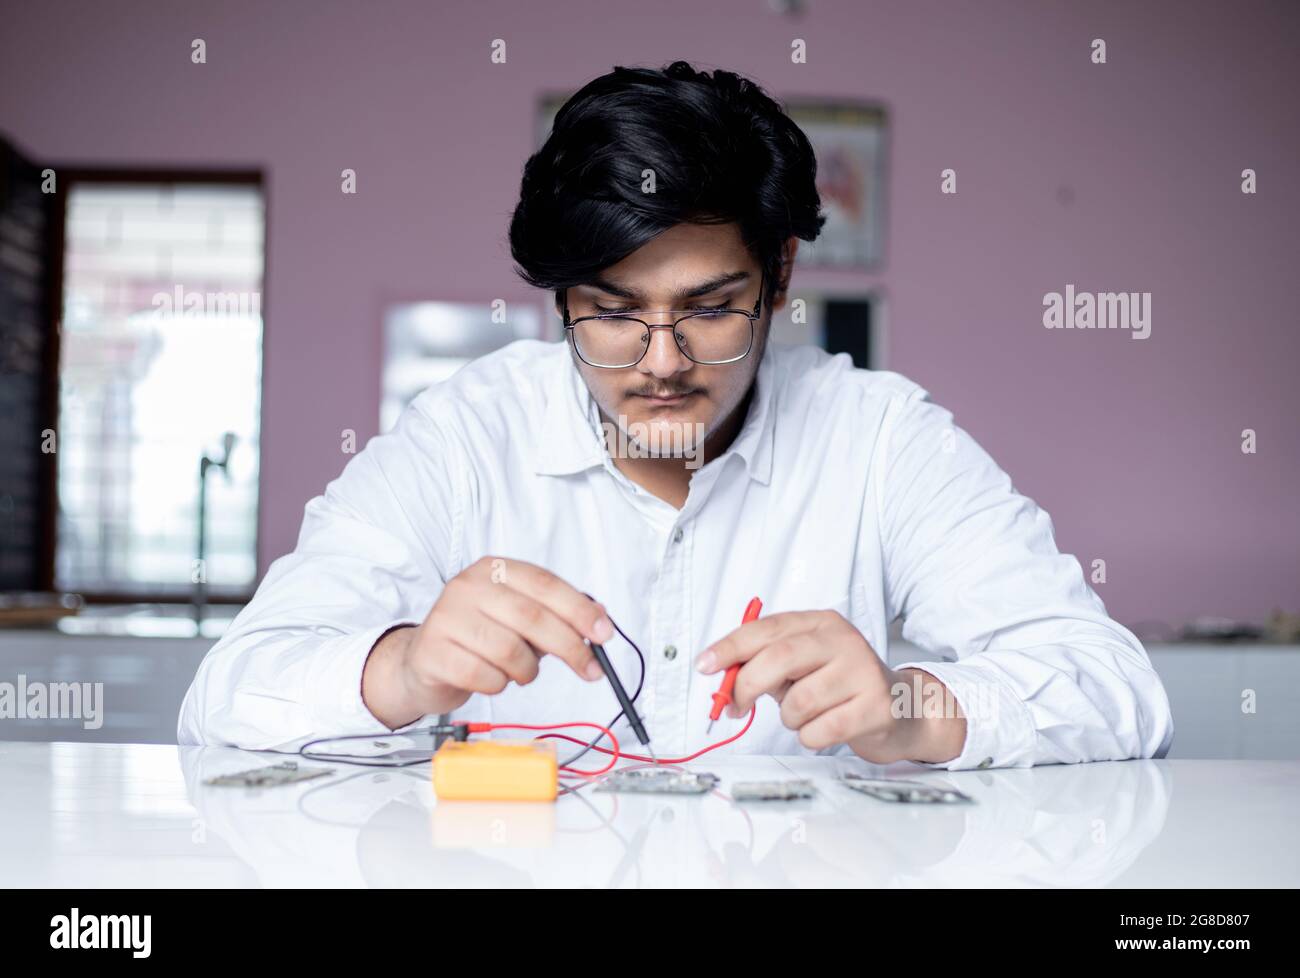 Porträt eines jungen männlichen Laborstudenten, der Experimente im Labor durchführt Stockfoto